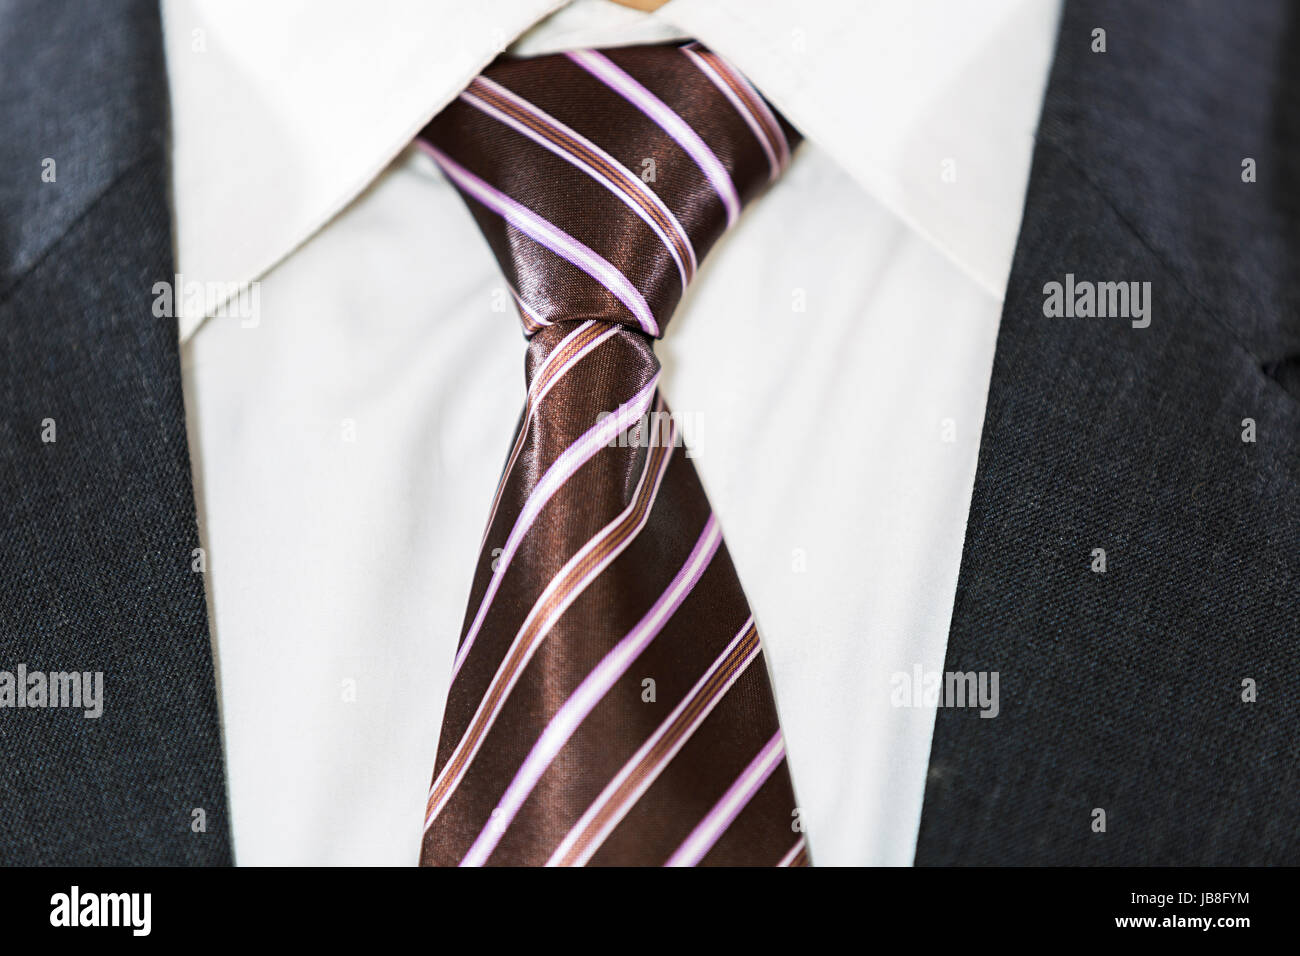 Förmliche Krawatte mit Anzug Midsection formelle Kleidung Nahaufnahme Stockfoto